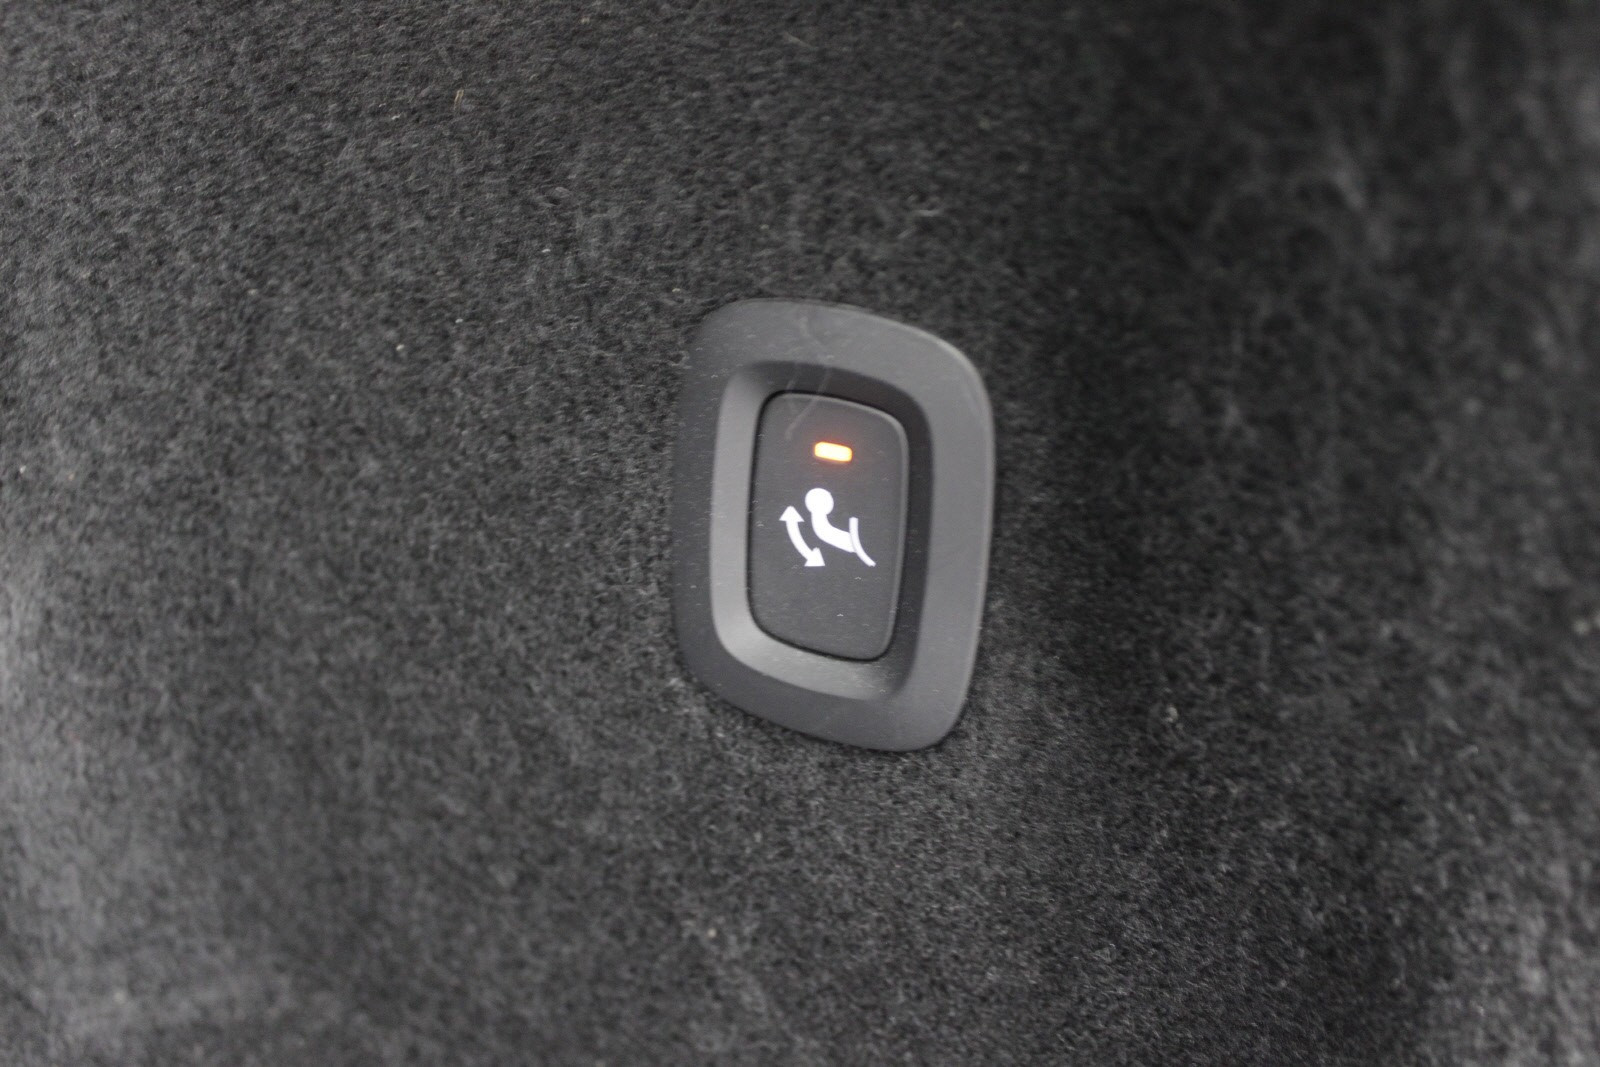 Hengerfeste utløses med denne knappen, Semi elektrisk.